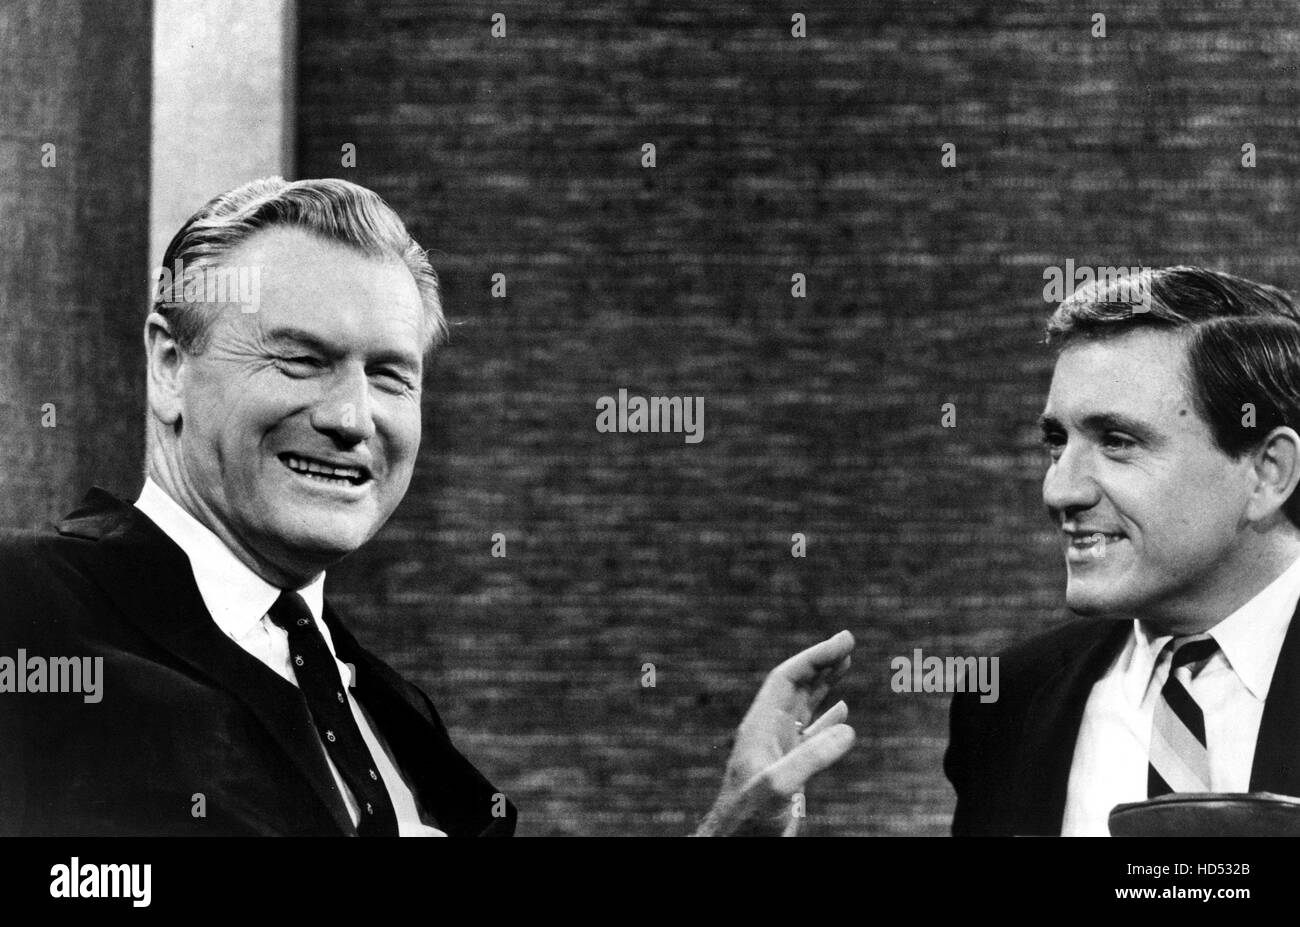 MERV GRIFFIN SHOW, Nelson Rockefeller, Merv Griffin, 1962-1986, 1967 episode Stock Photo